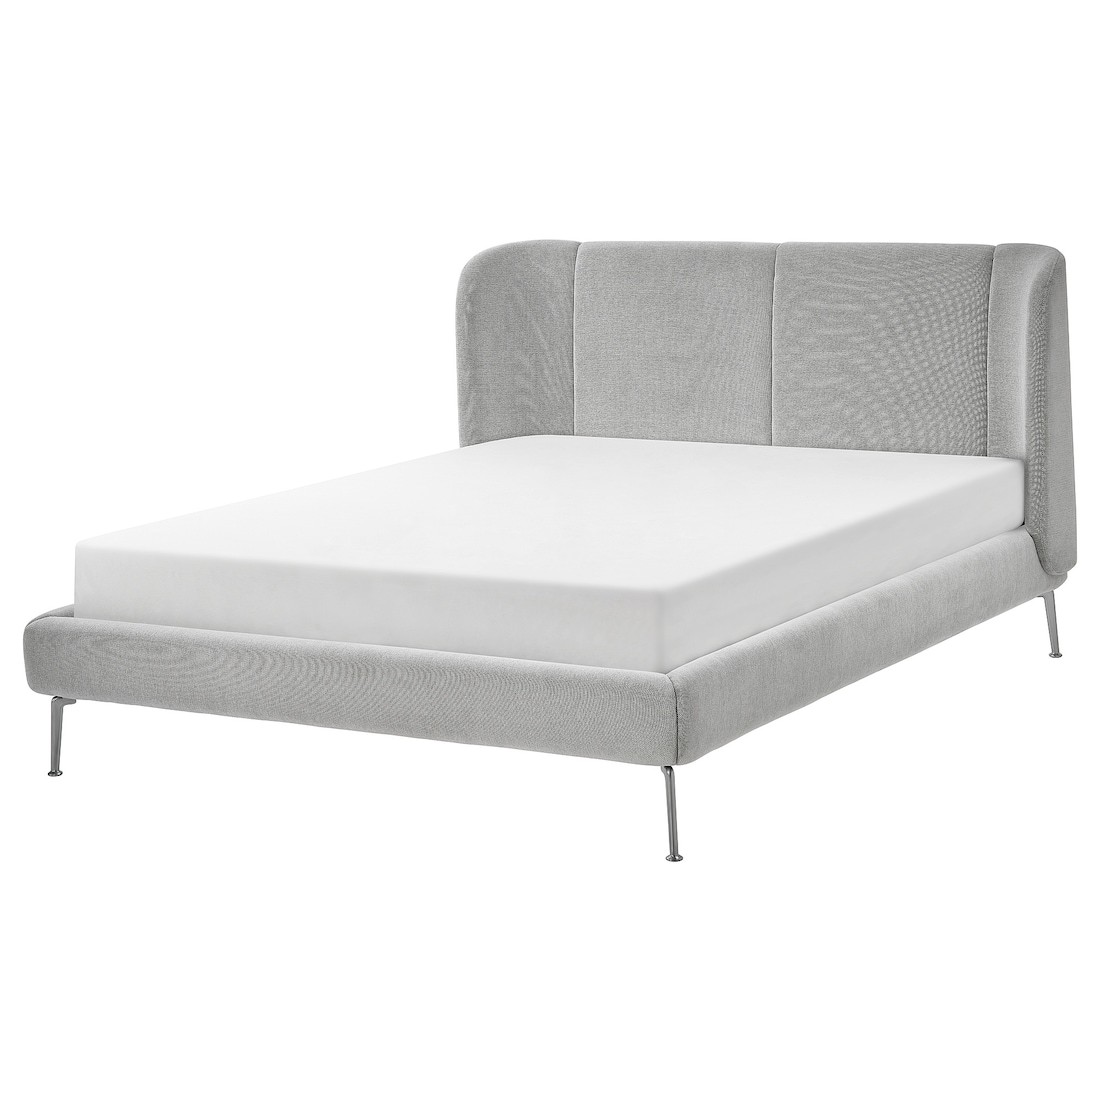 TUFJORD каркас ліжка з оббивкою, Tallmyra біла / чорна / Luröy, 160x200 см